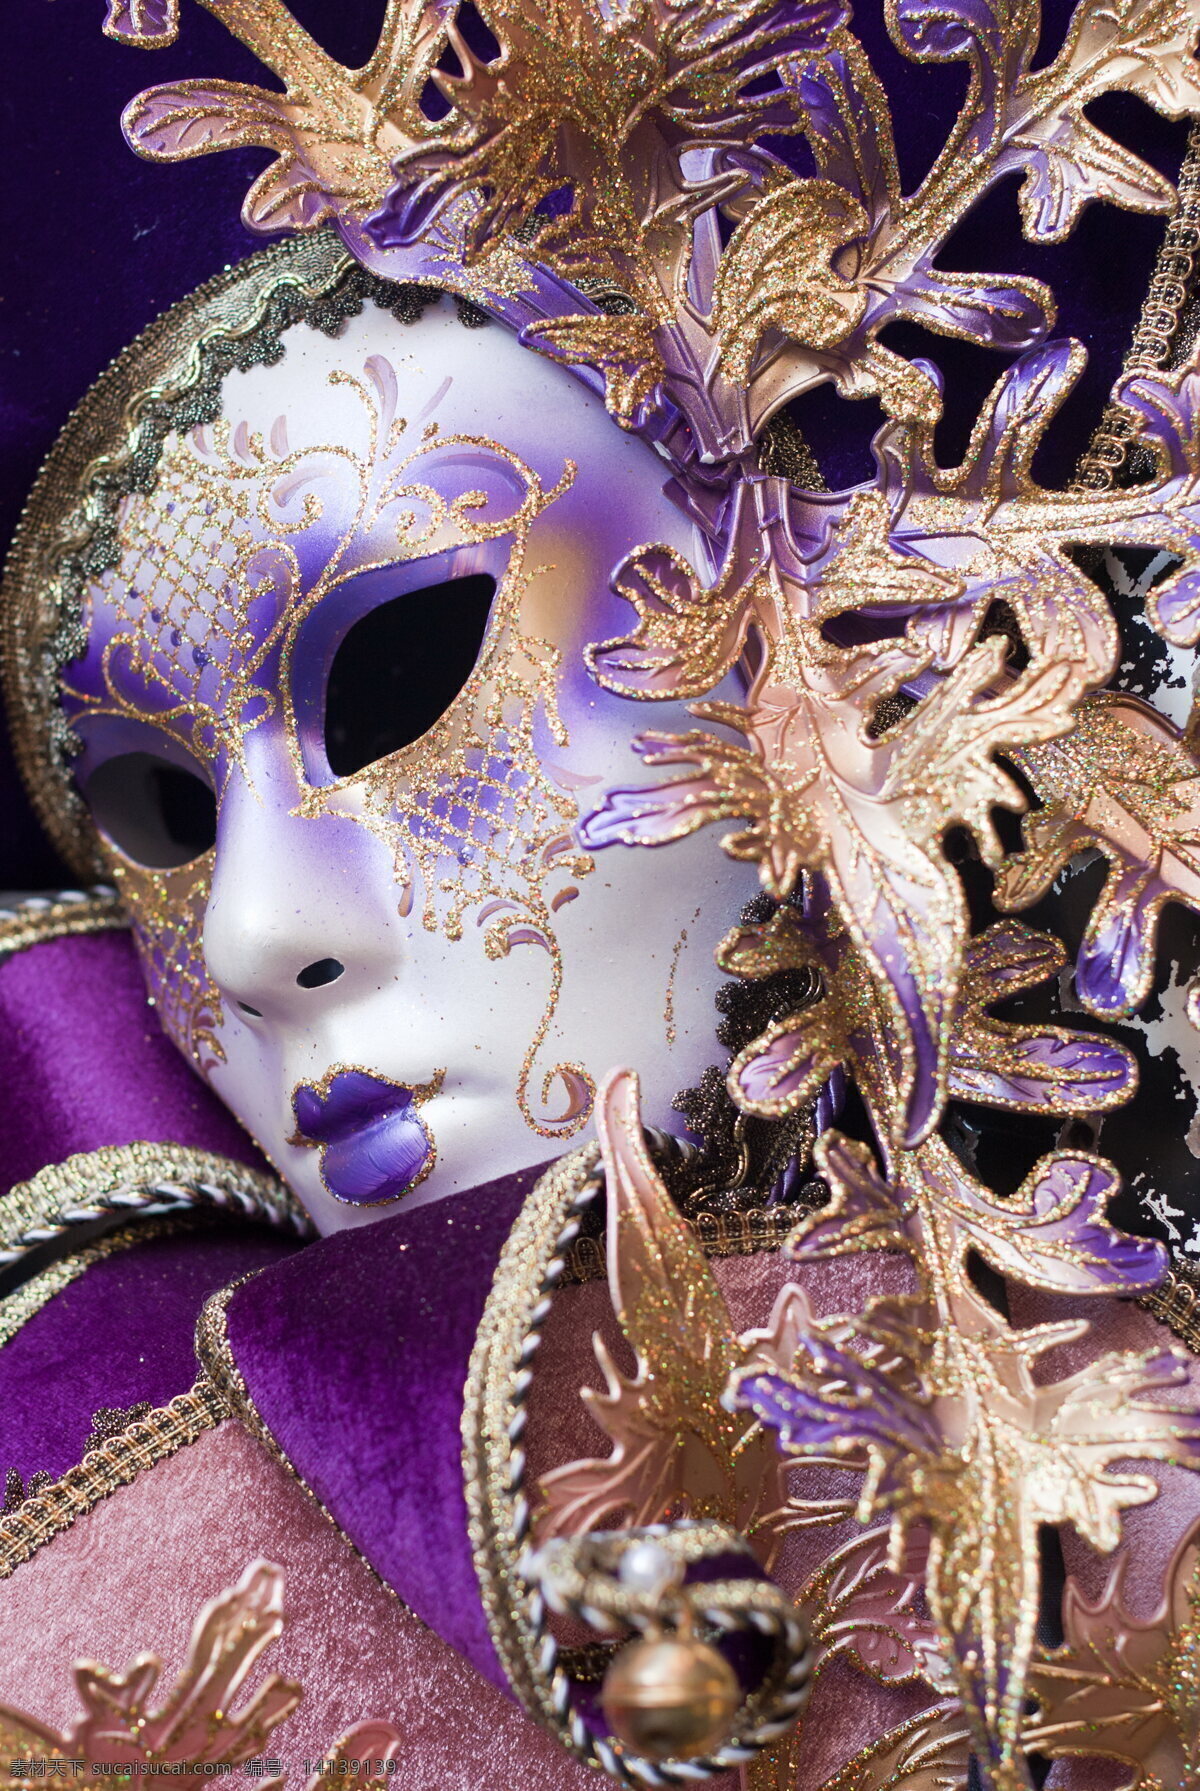 假面 面具 假面舞会 威尼斯面具 狂欢节面具 花纹面具 花纹 纹理 个性面具 舞会面具 工艺品 手工品 狂欢节 舞会 宴会 社交 生活百科 生活素材